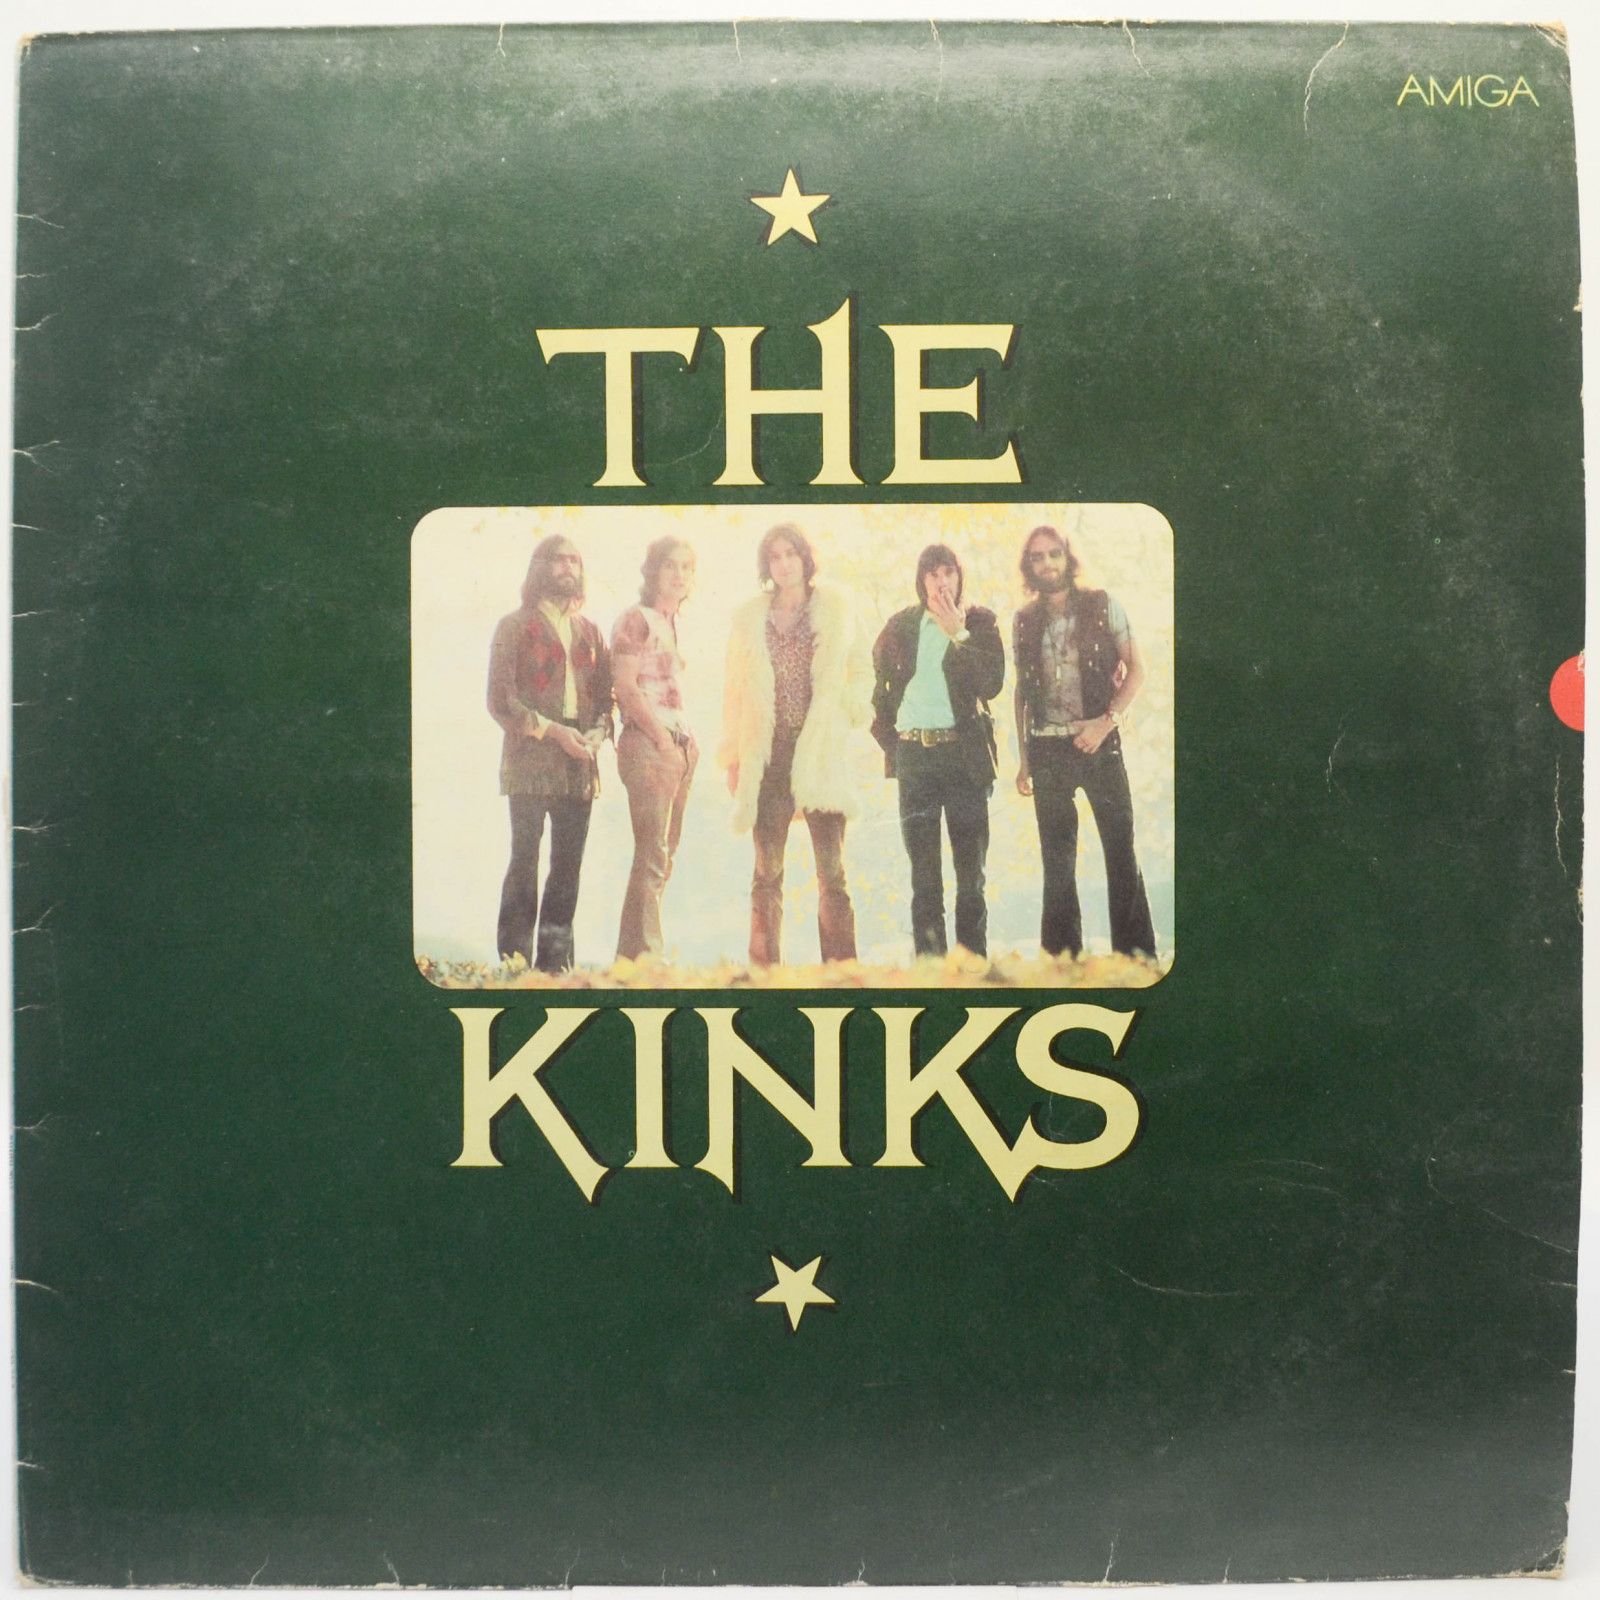 Kinks — The Kinks, 1982